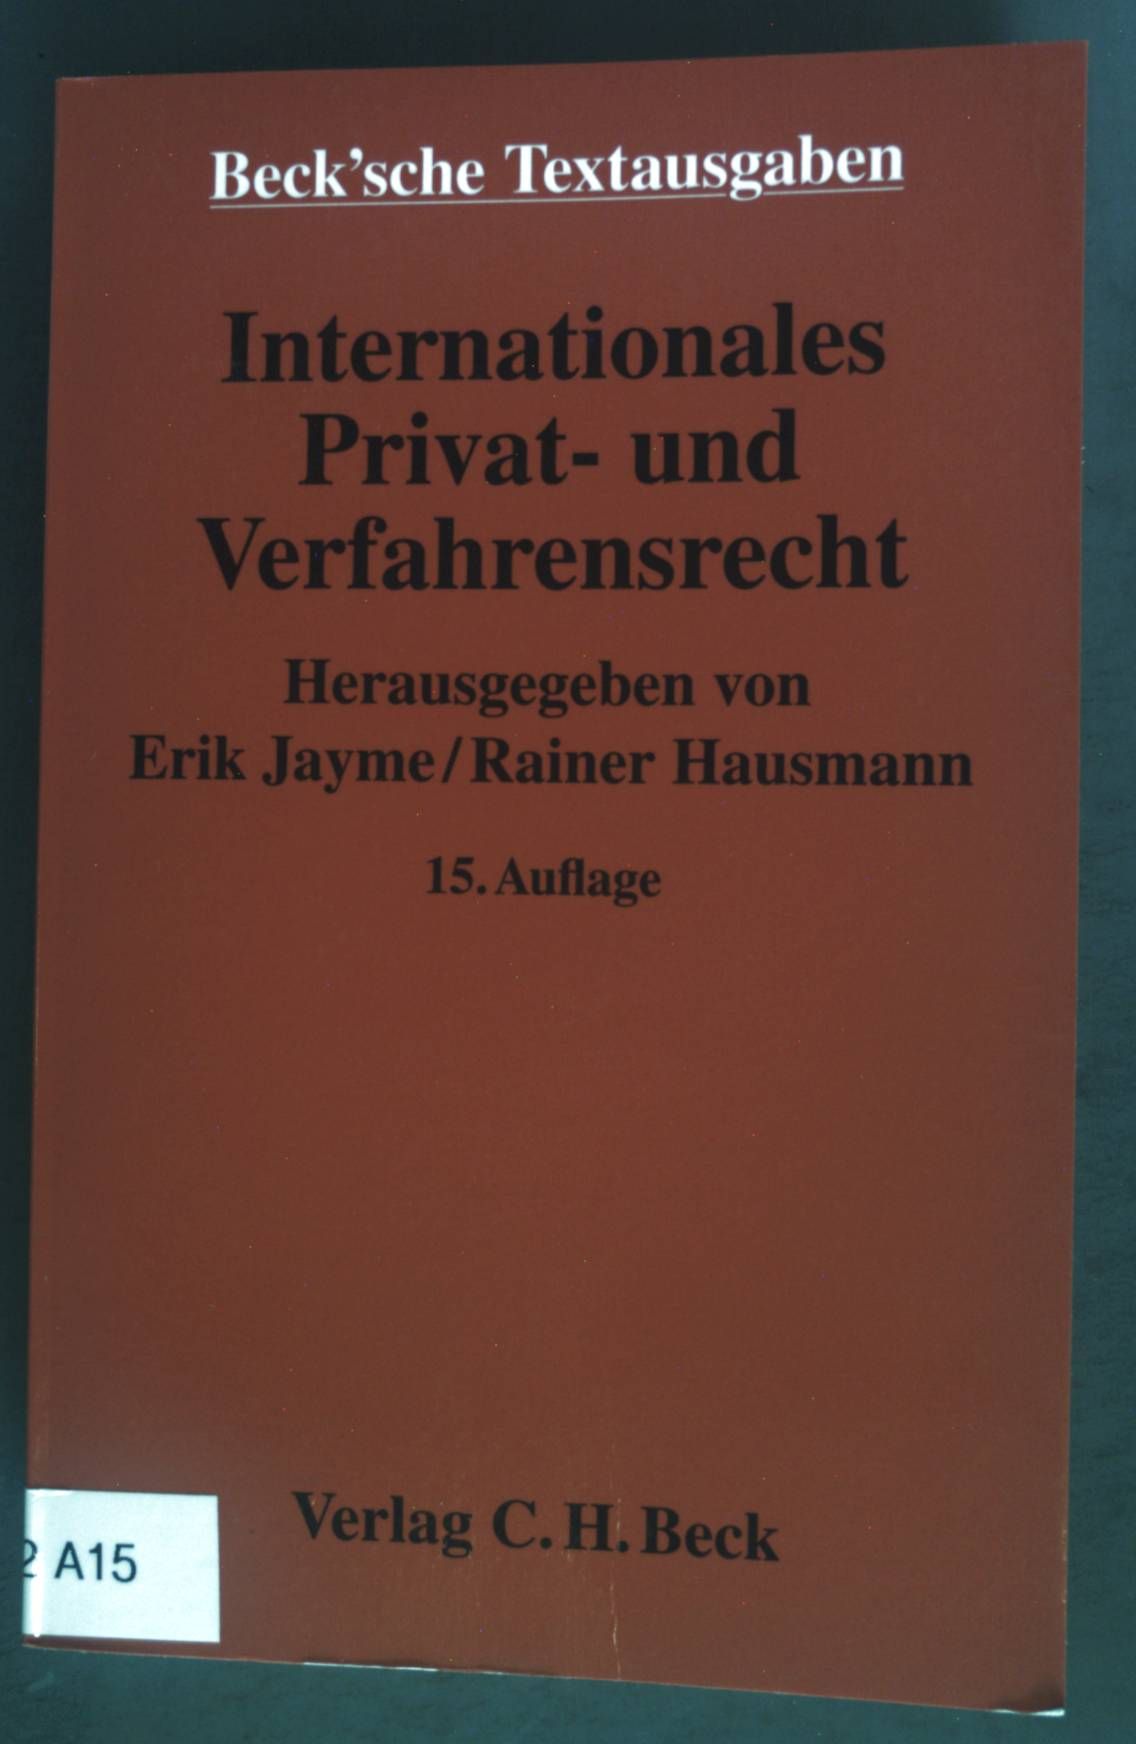 Internationales Privat- und Verfahrensrecht: Textausgabe. Beck'sche Textausgaben. - Jayme, Erik (Herausgeber) und Rainer Hausmann